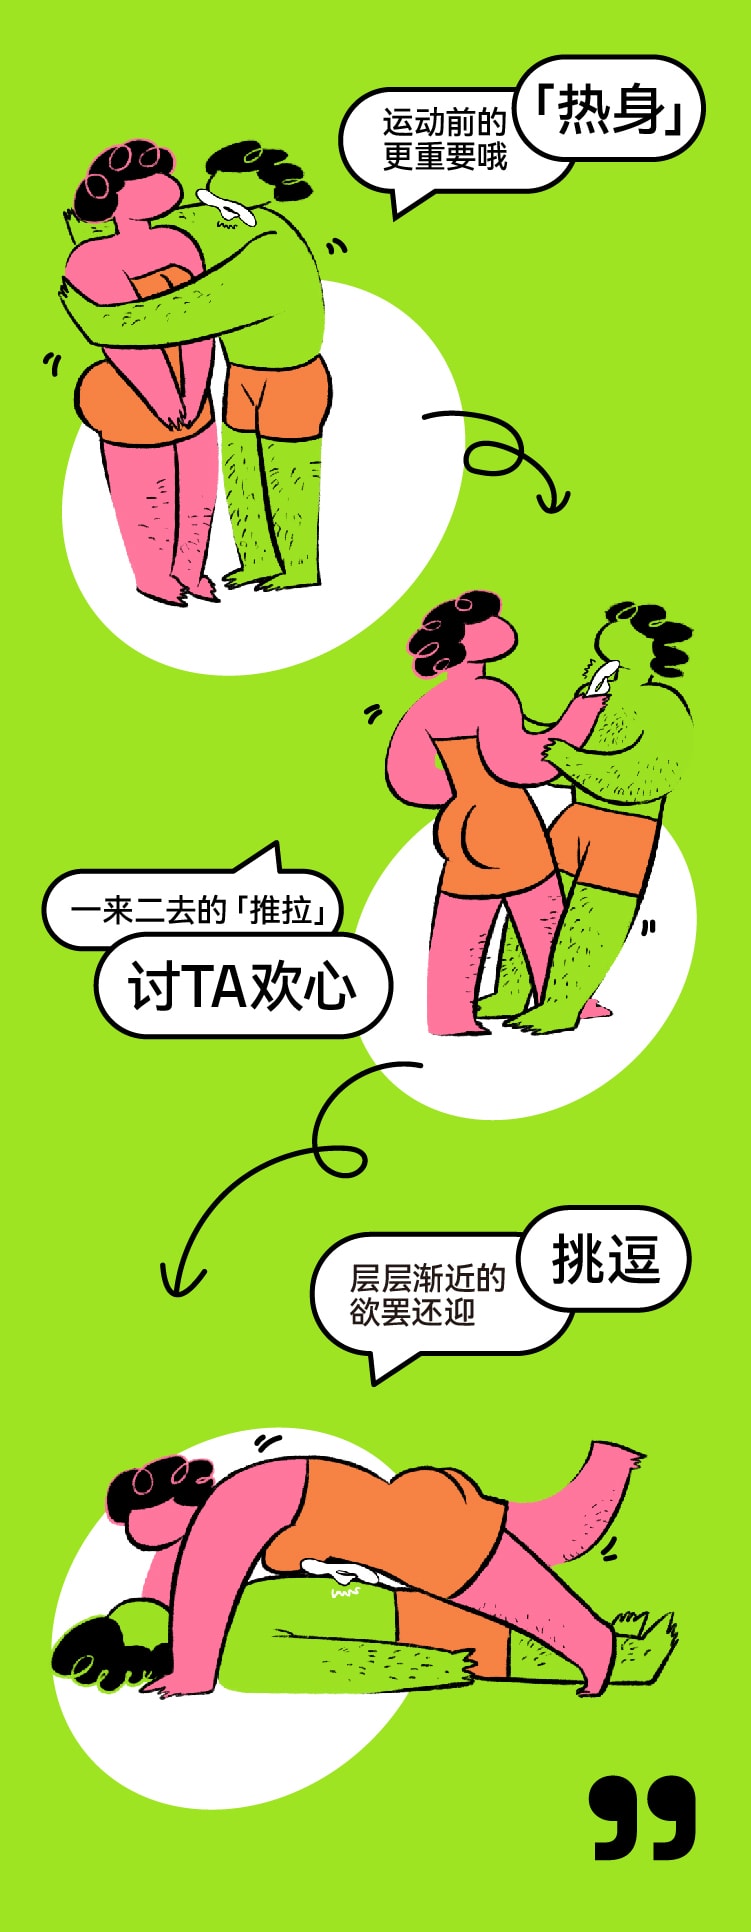 中國OROK一路向蓓震動棒女性專用自慰器 成人情趣玩具g點插入式 櫻花粉1件